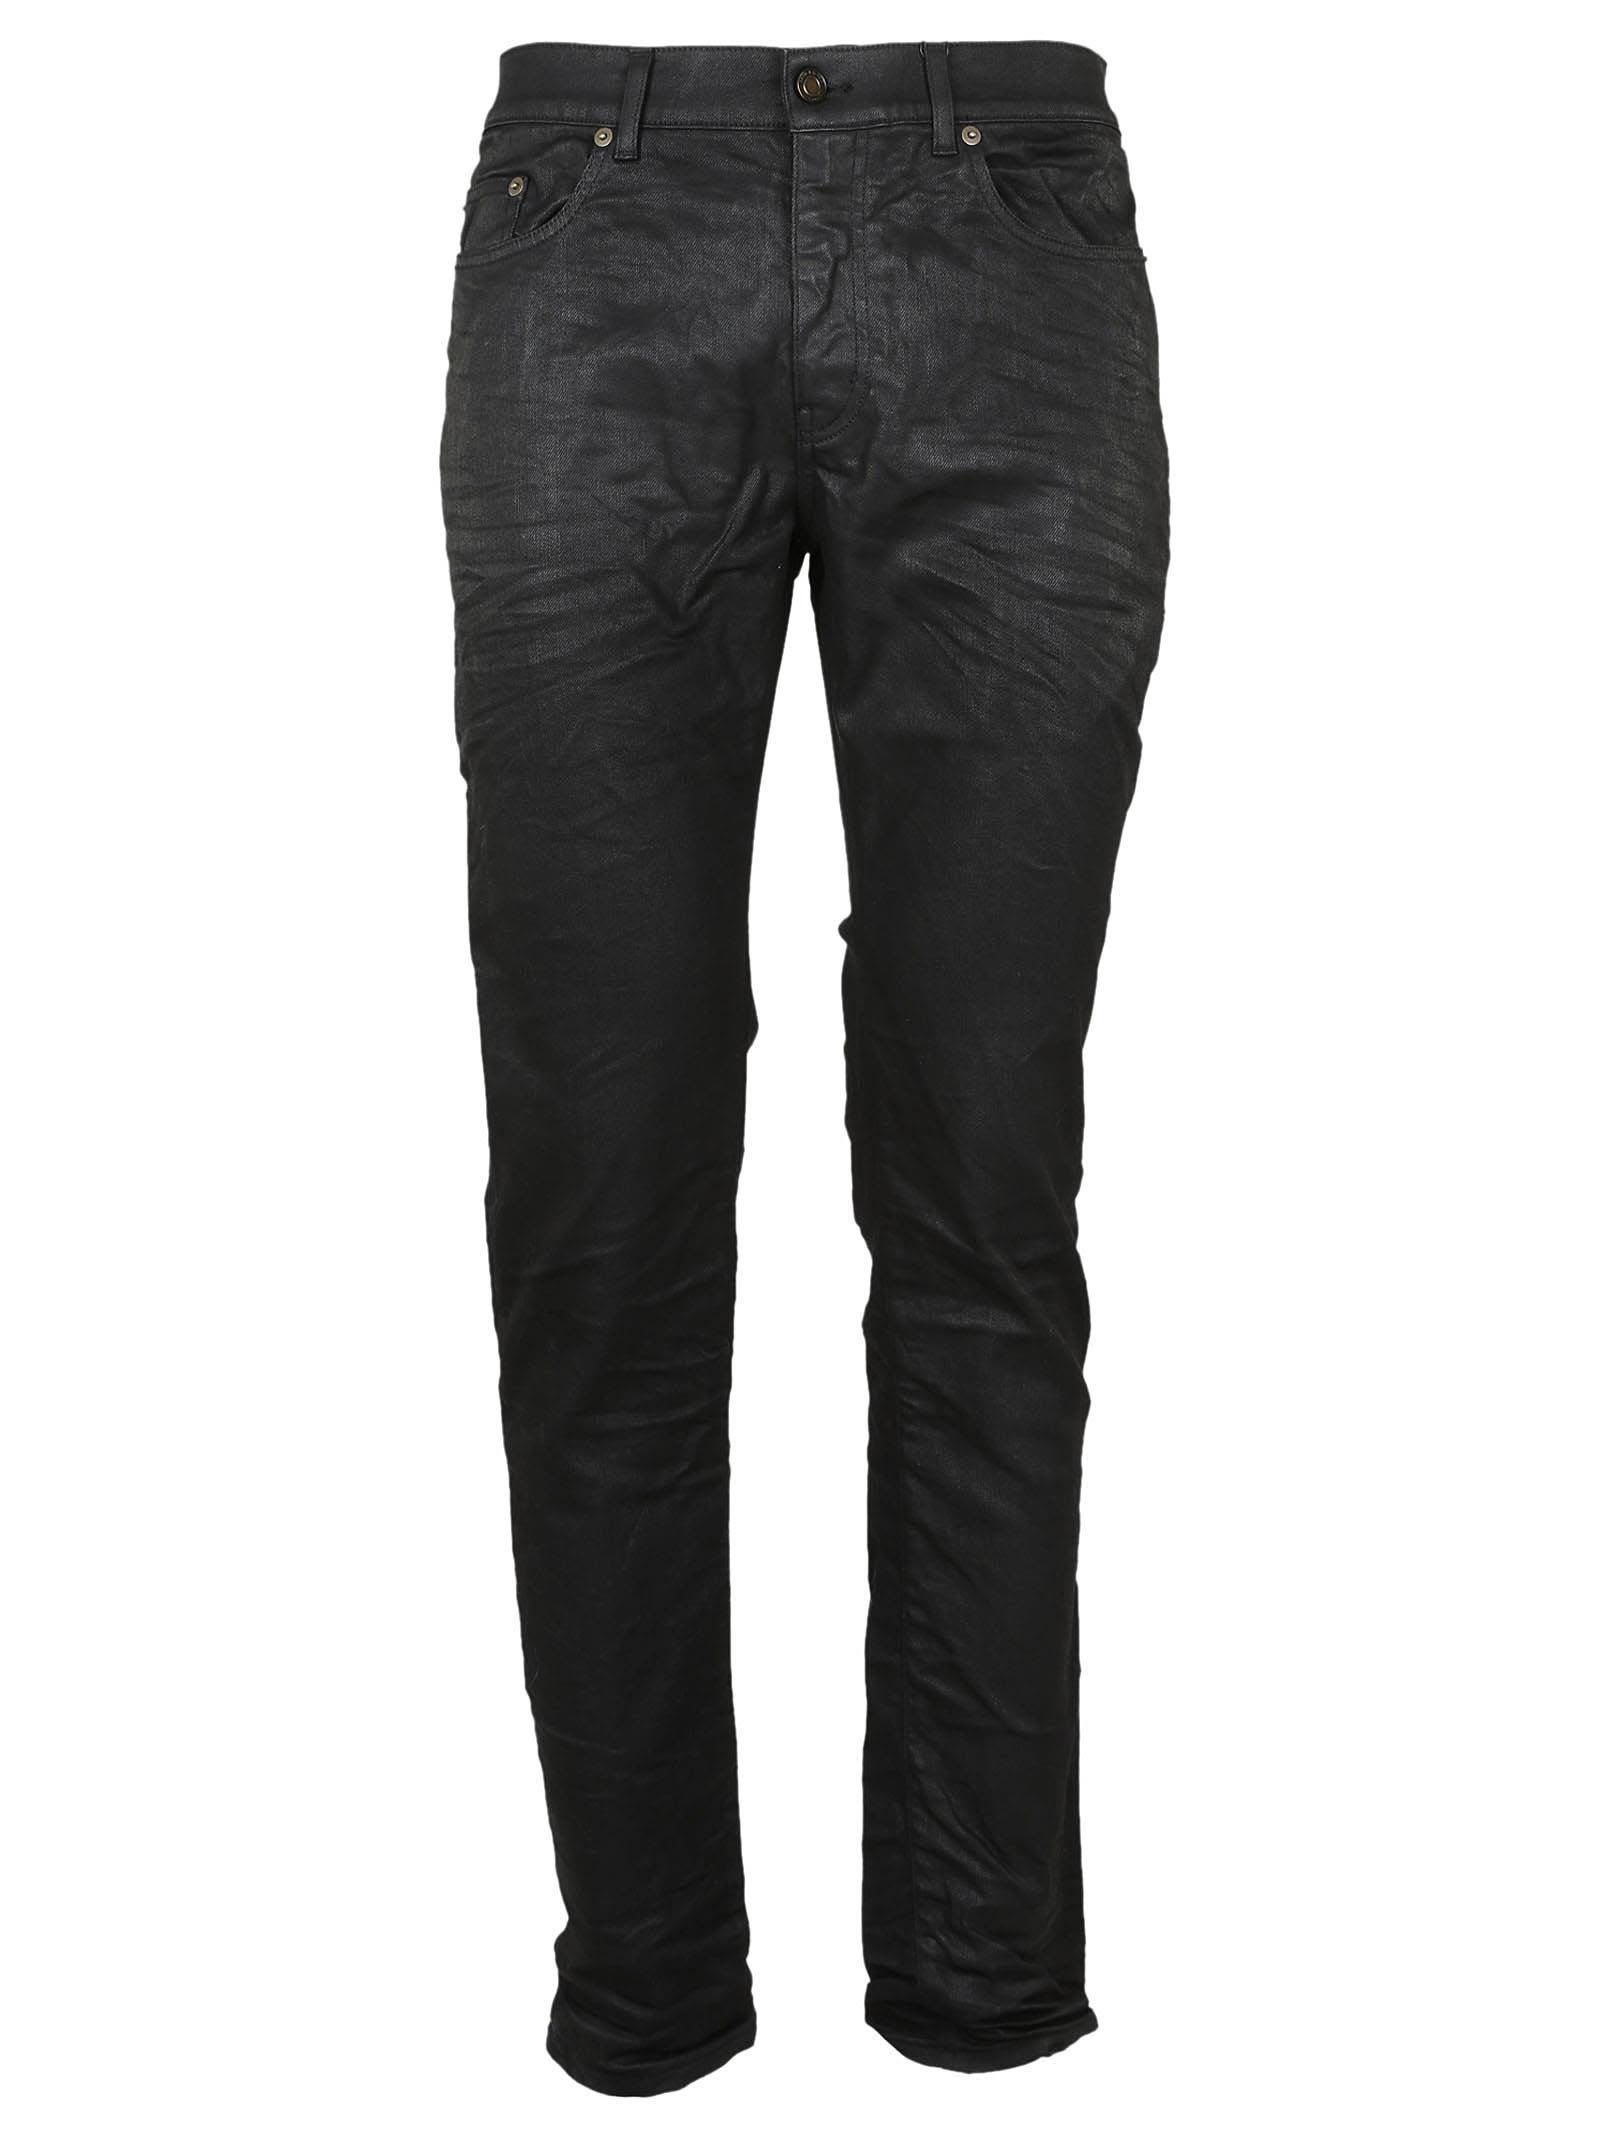 Saint Laurent - Saint Laurent Coated Jeans - Black, Men's Jeans | Italist